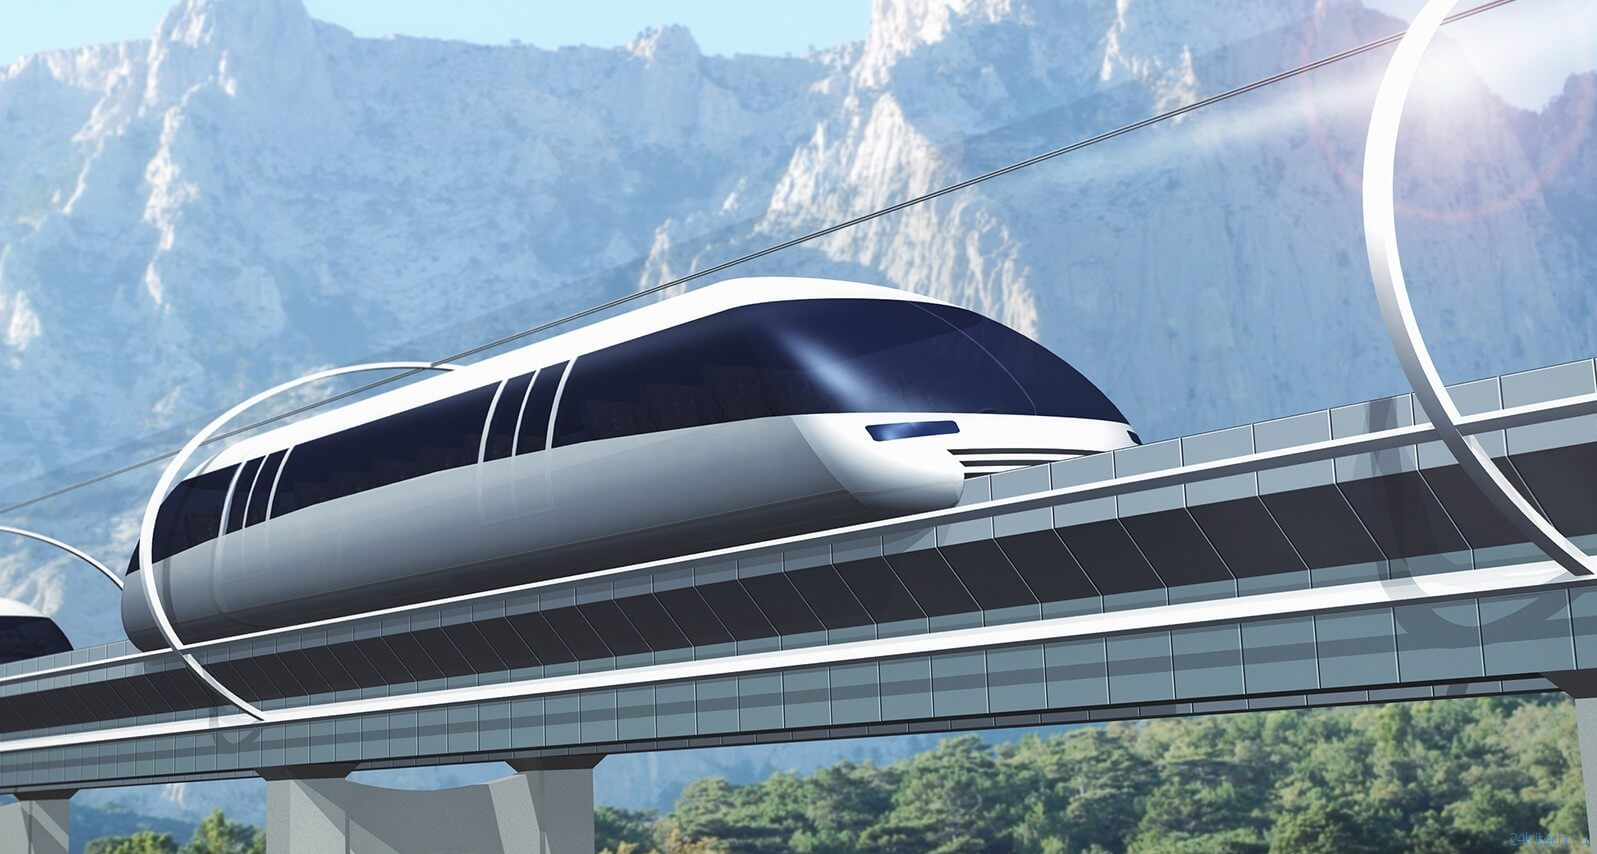 Когда мы получим транспорт будущего Hyperloop  и с какой скоростью он сможет перемещаться?